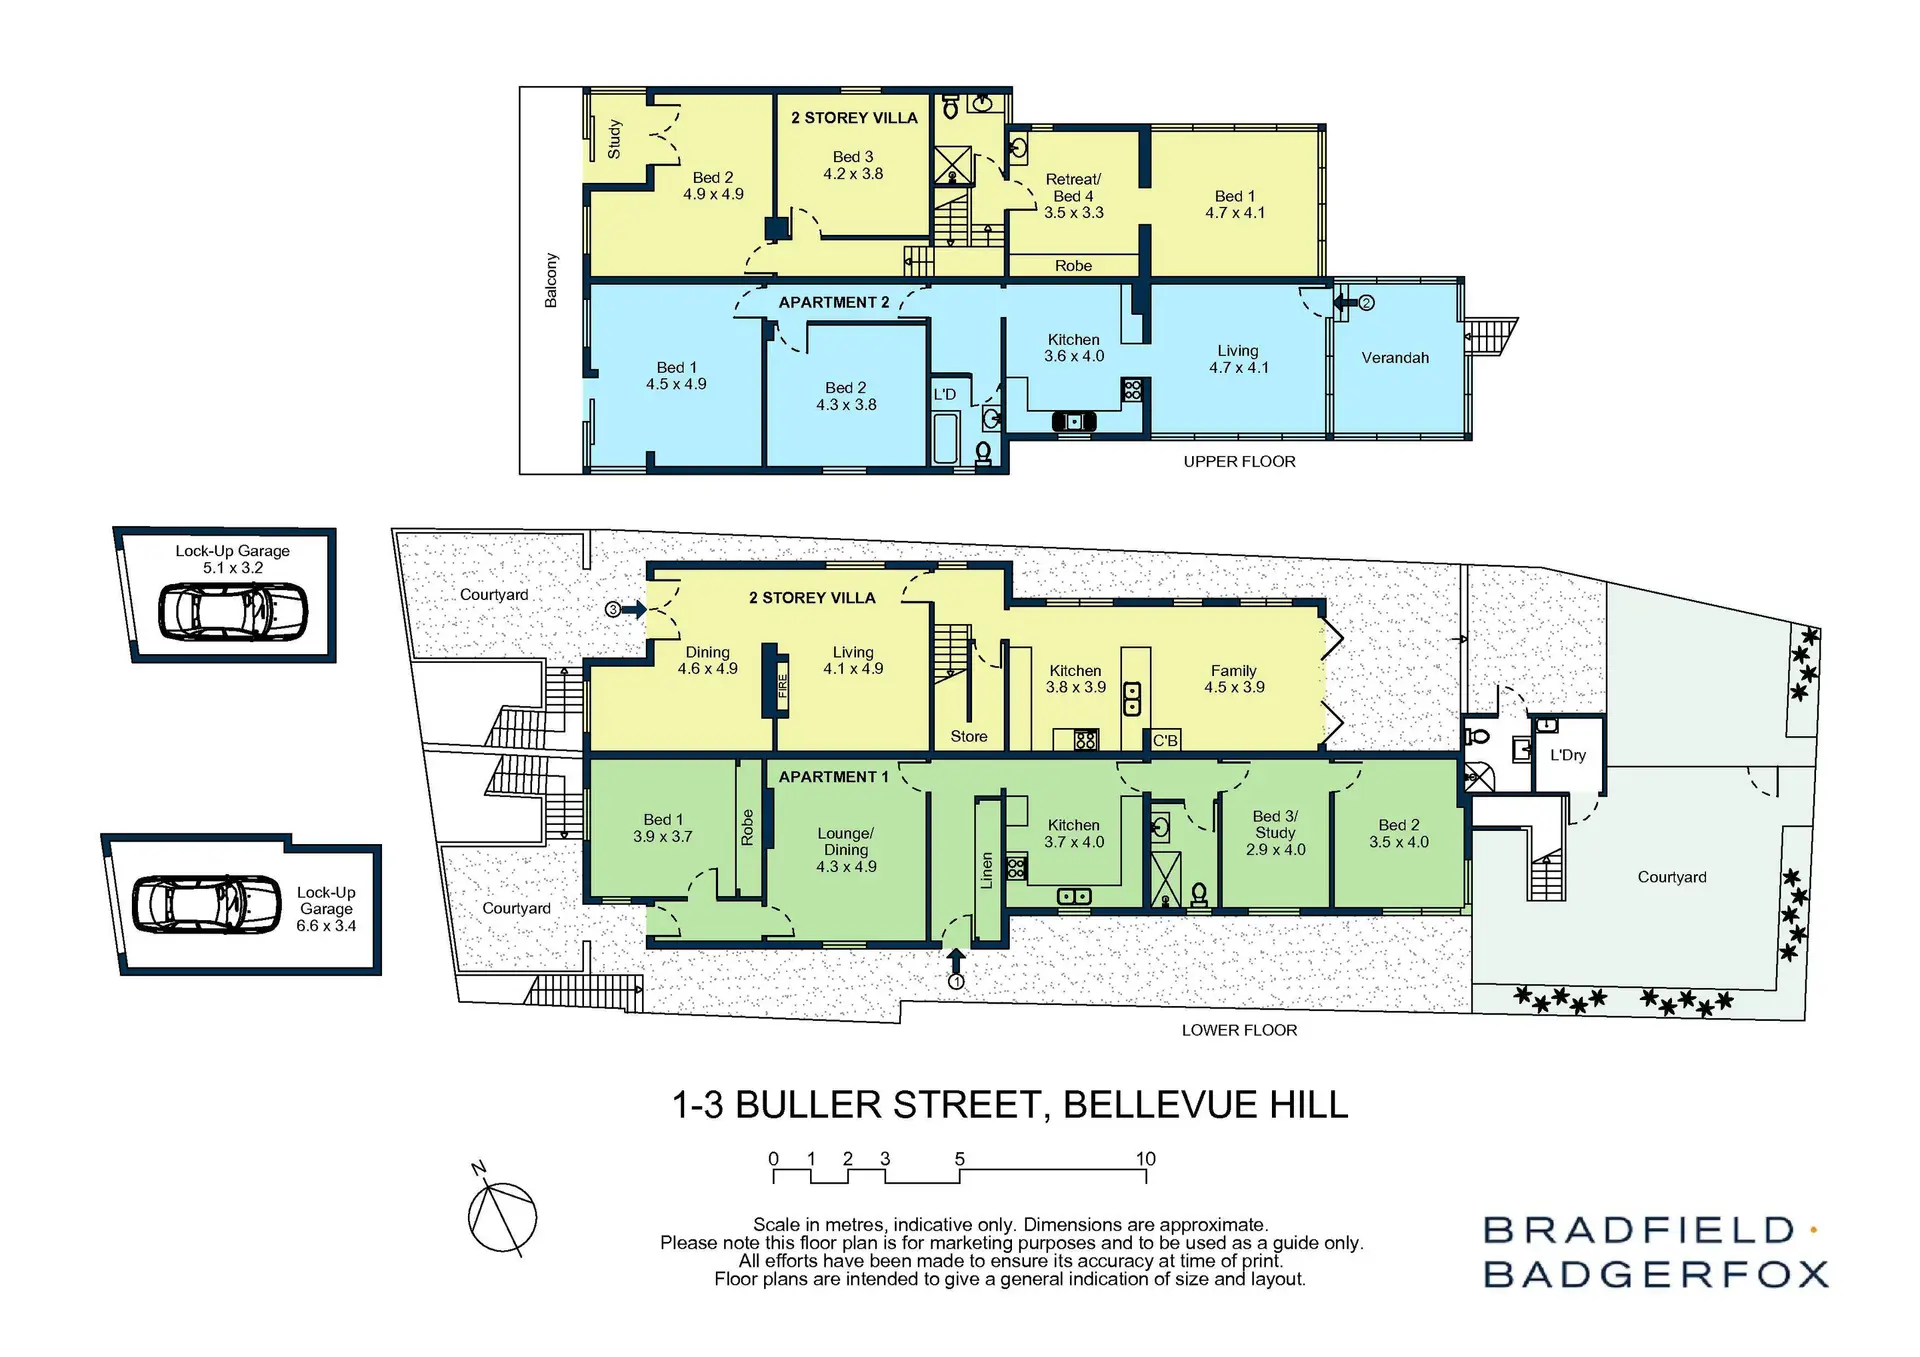 1-3/ Buller Street, Bellevue Hill Sold by Bradfield Badgerfox - image 1